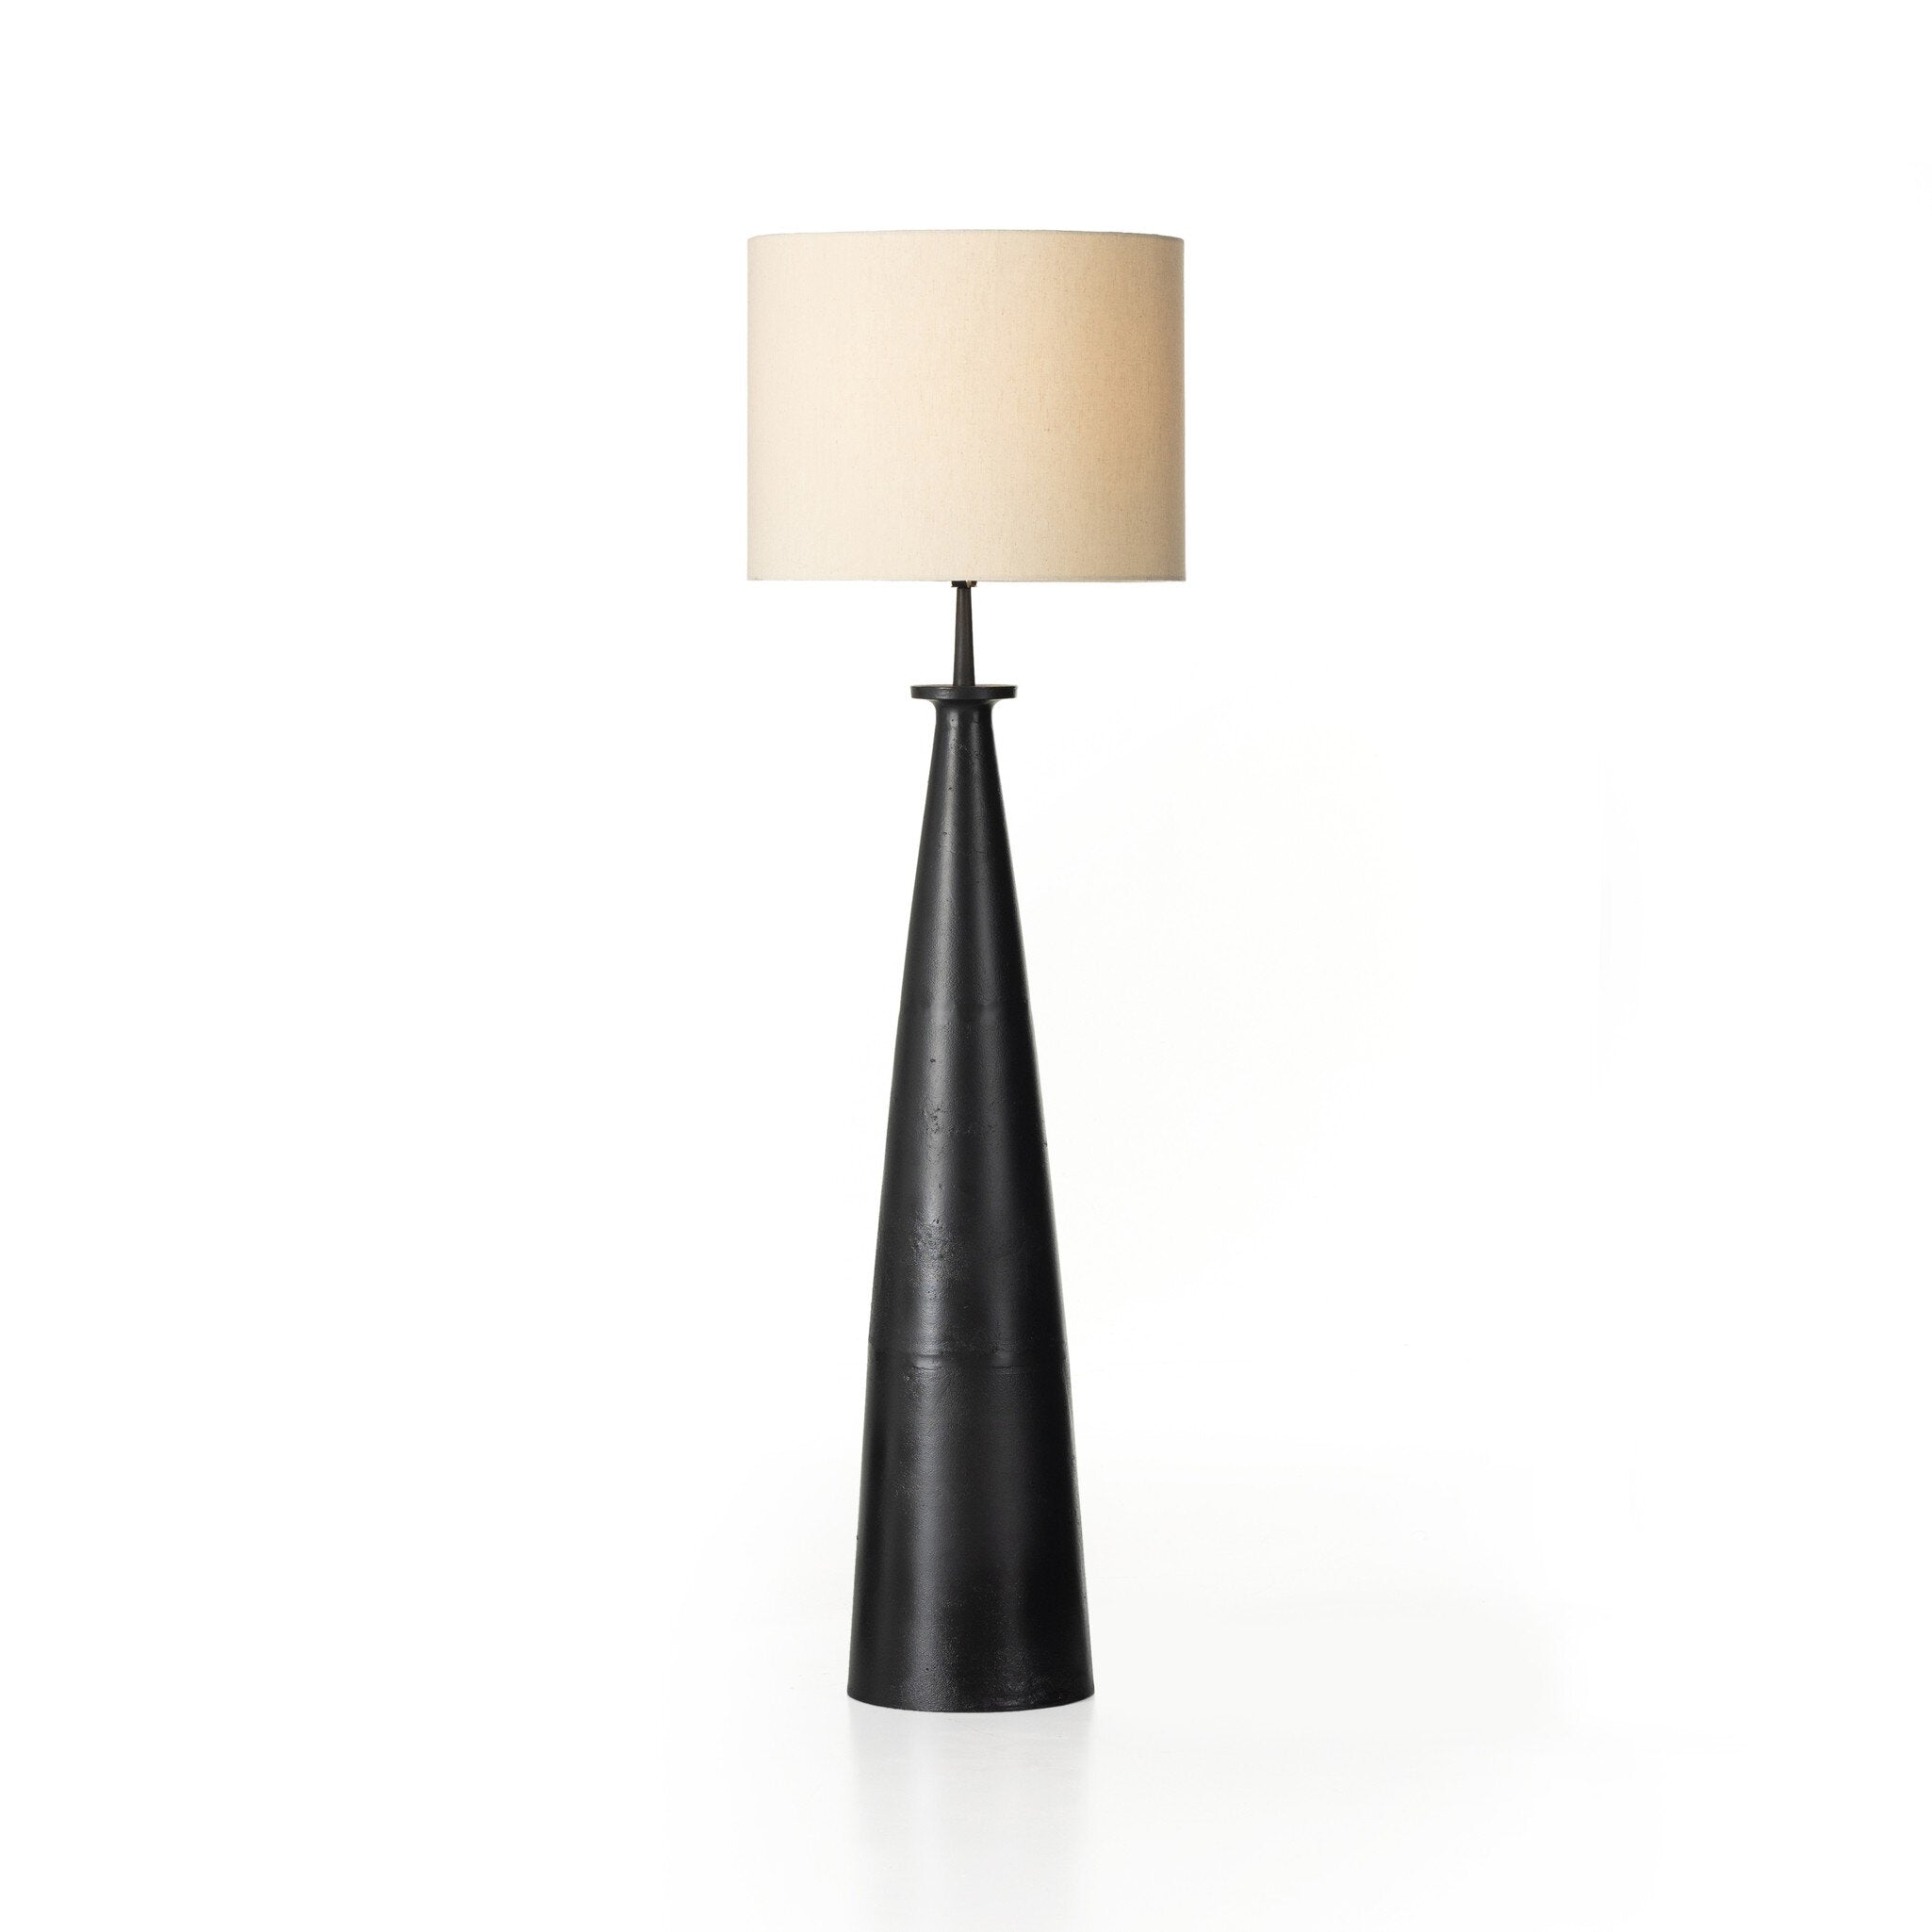 Innes Floor Lamp - Matte Black Cast Aluminum